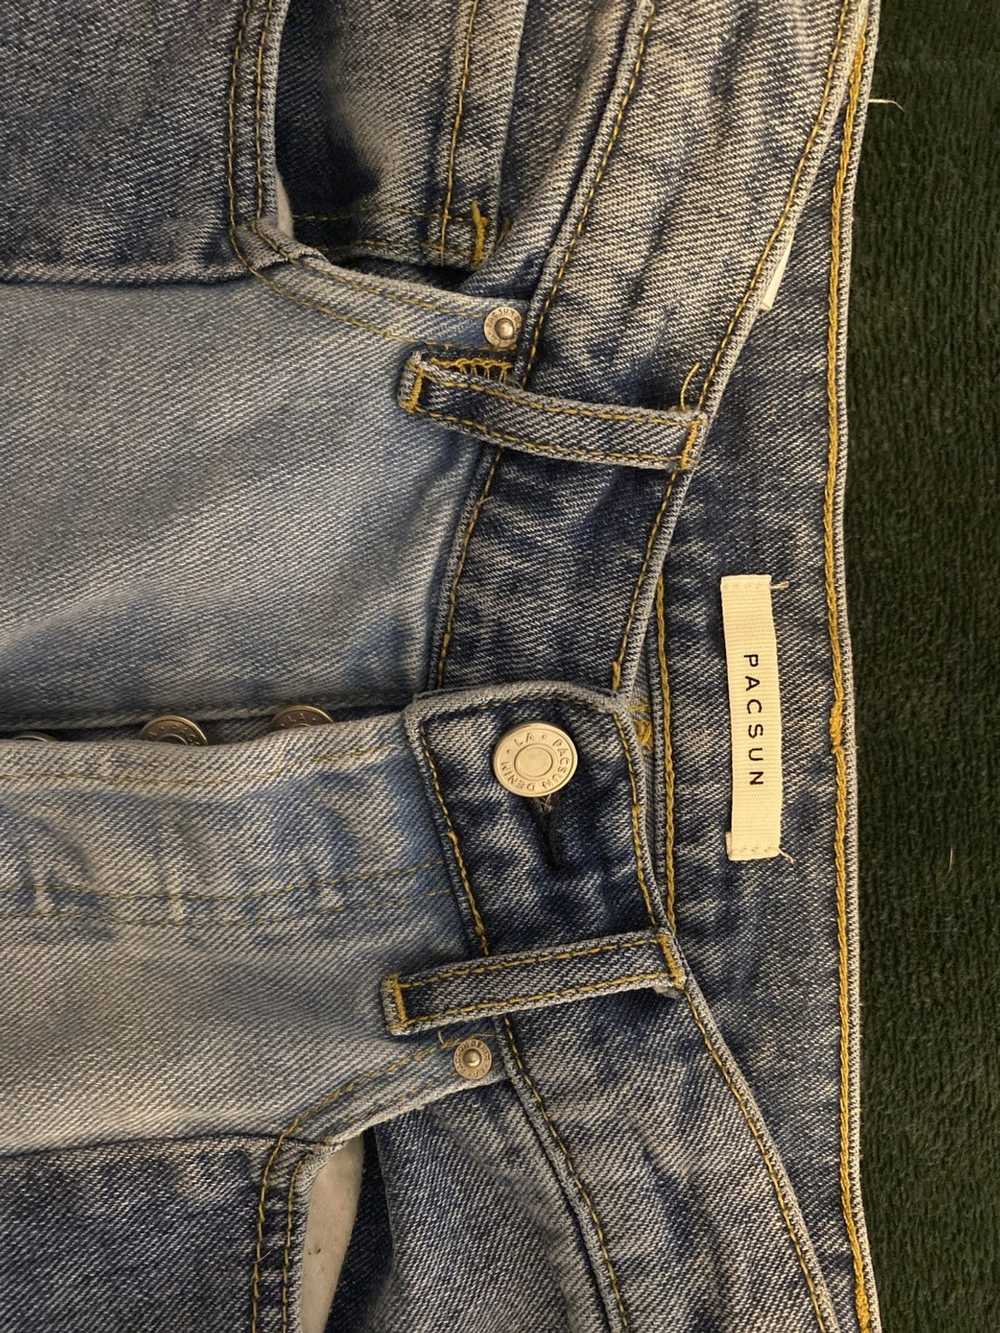 Pacsun SZ 23 Vintage Patched PacSun Jeans - image 4